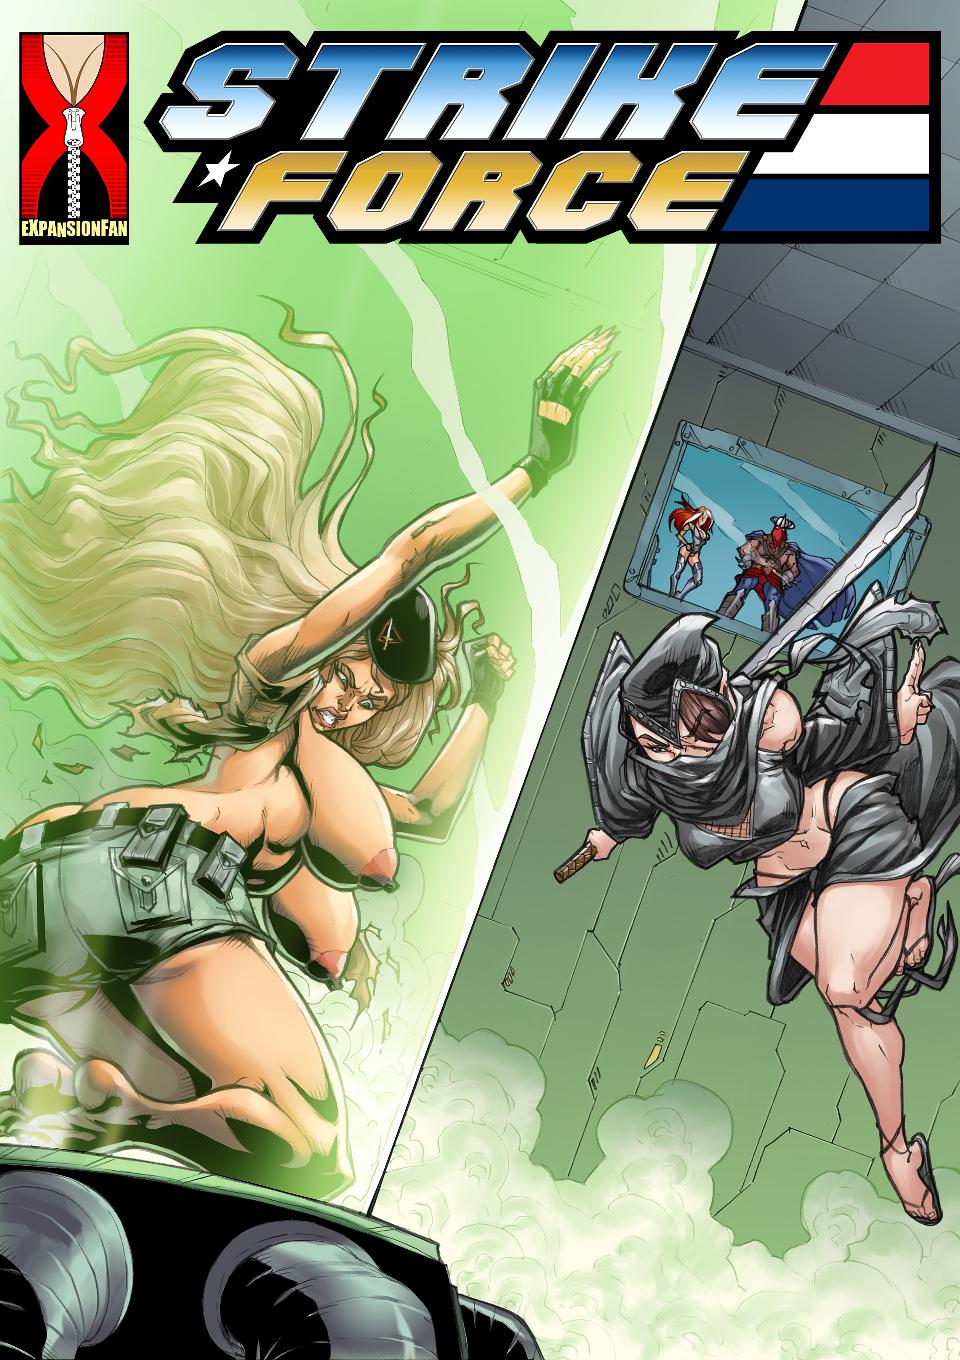 Porn Comics - Strike Force- Expansionfan porn comics 8 muses